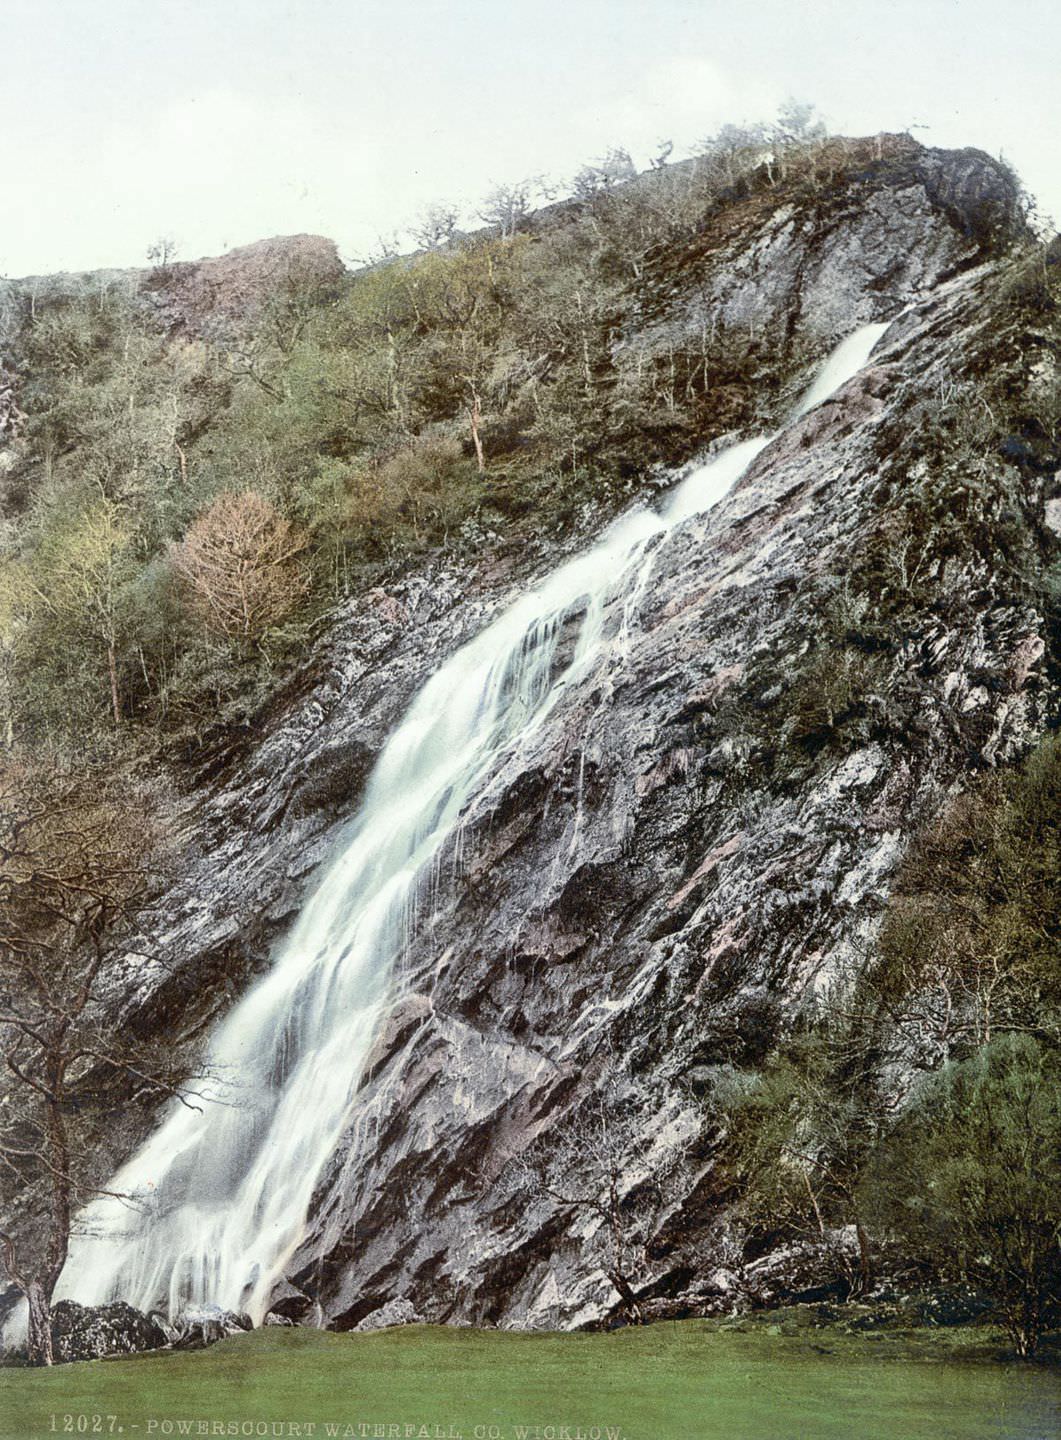 Powerscourt Waterfall, County Wicklow.